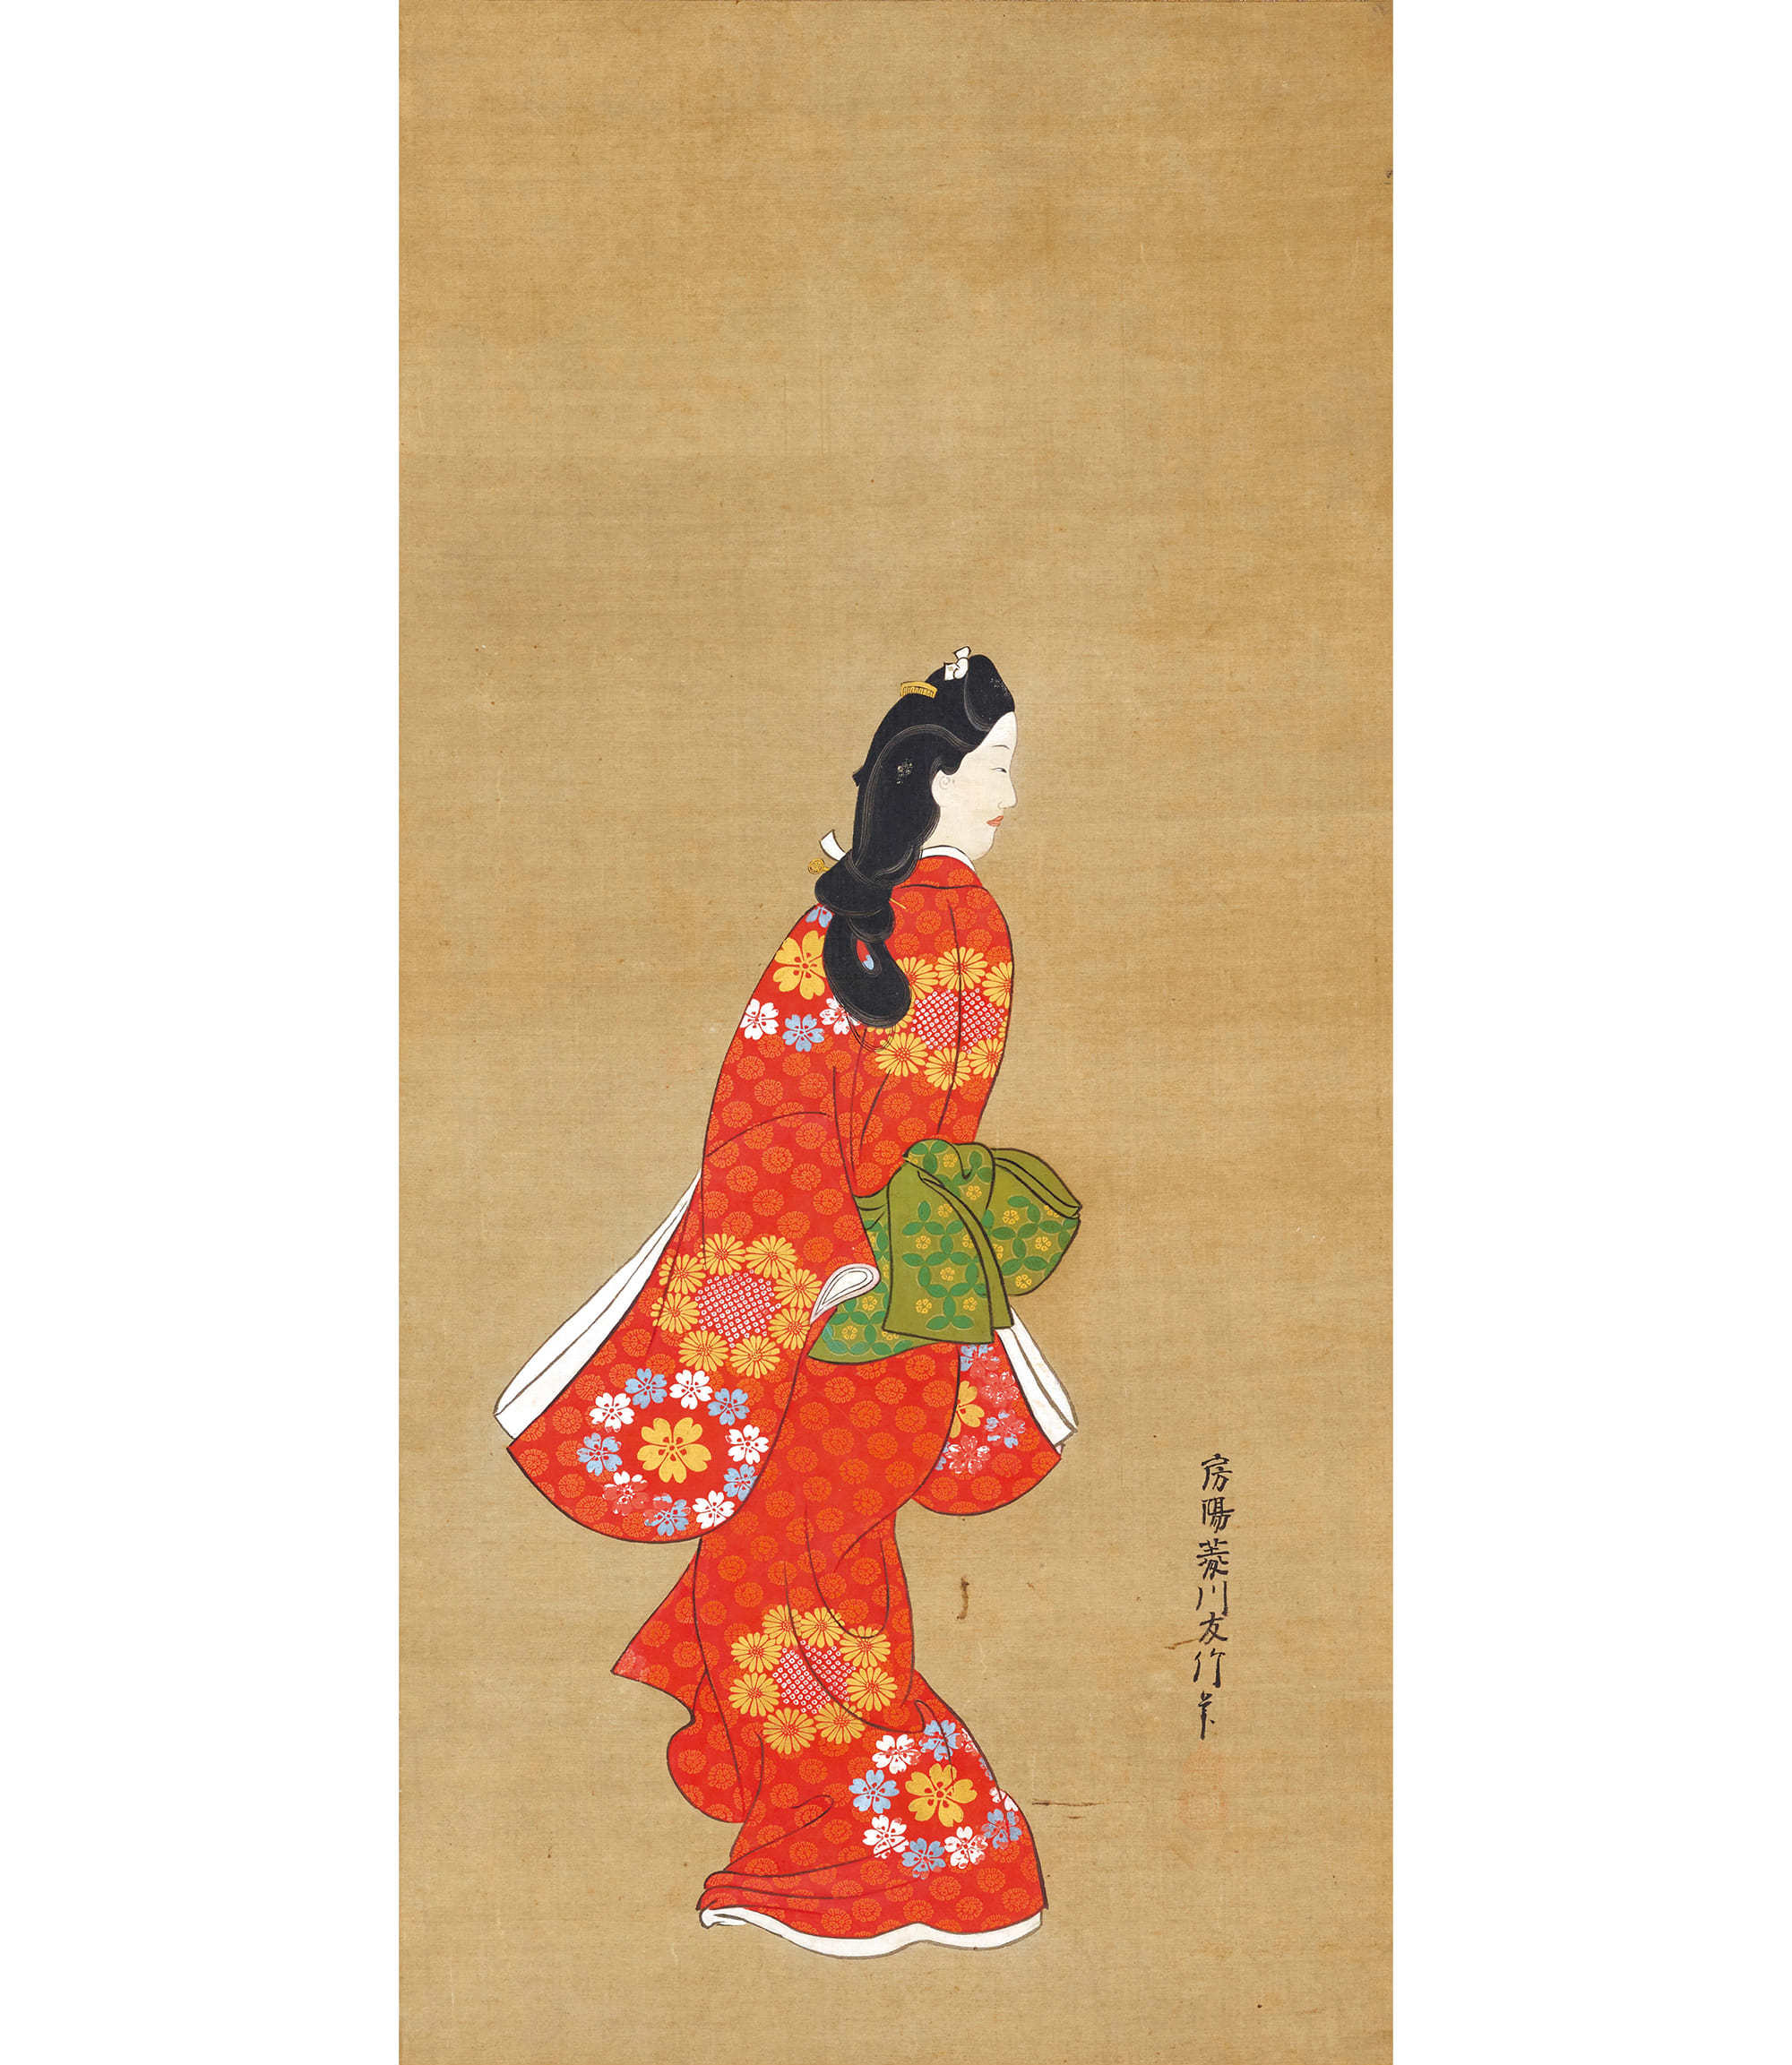 見返り美人図  菱川師宣筆 江戸時代・17世紀、東京国立博物館蔵